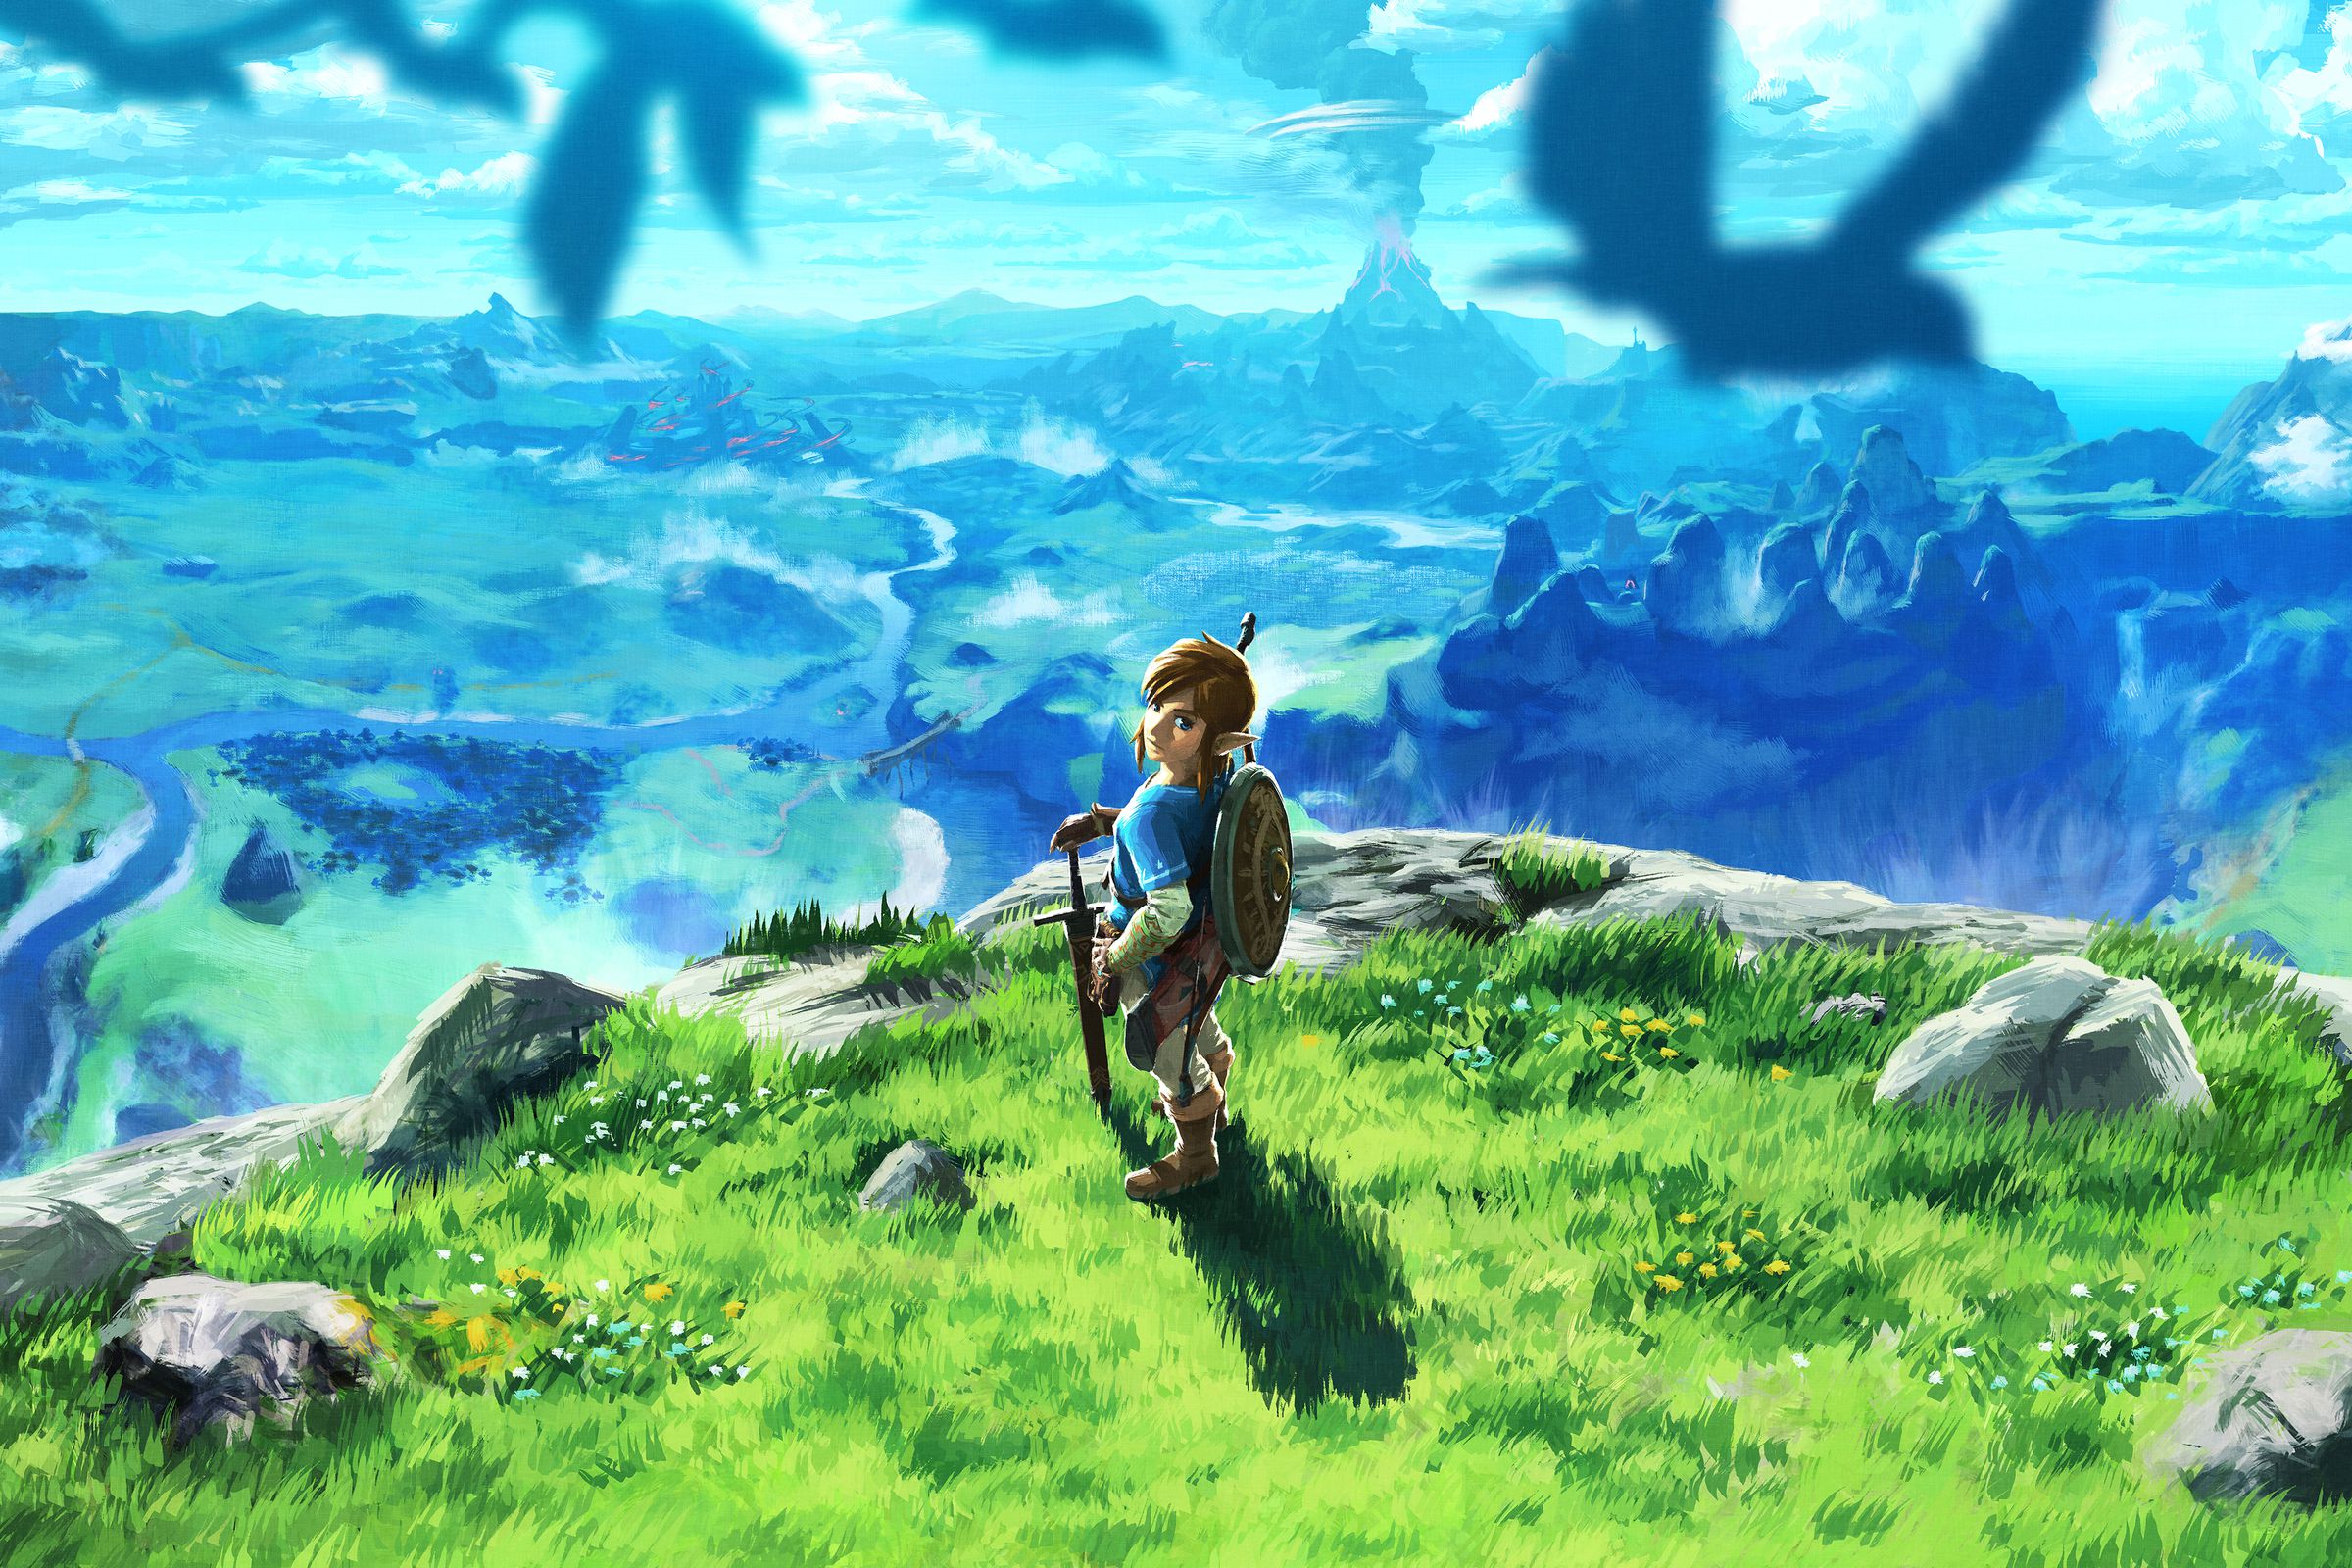 The Legend of Zelda: Breath of the Wild art